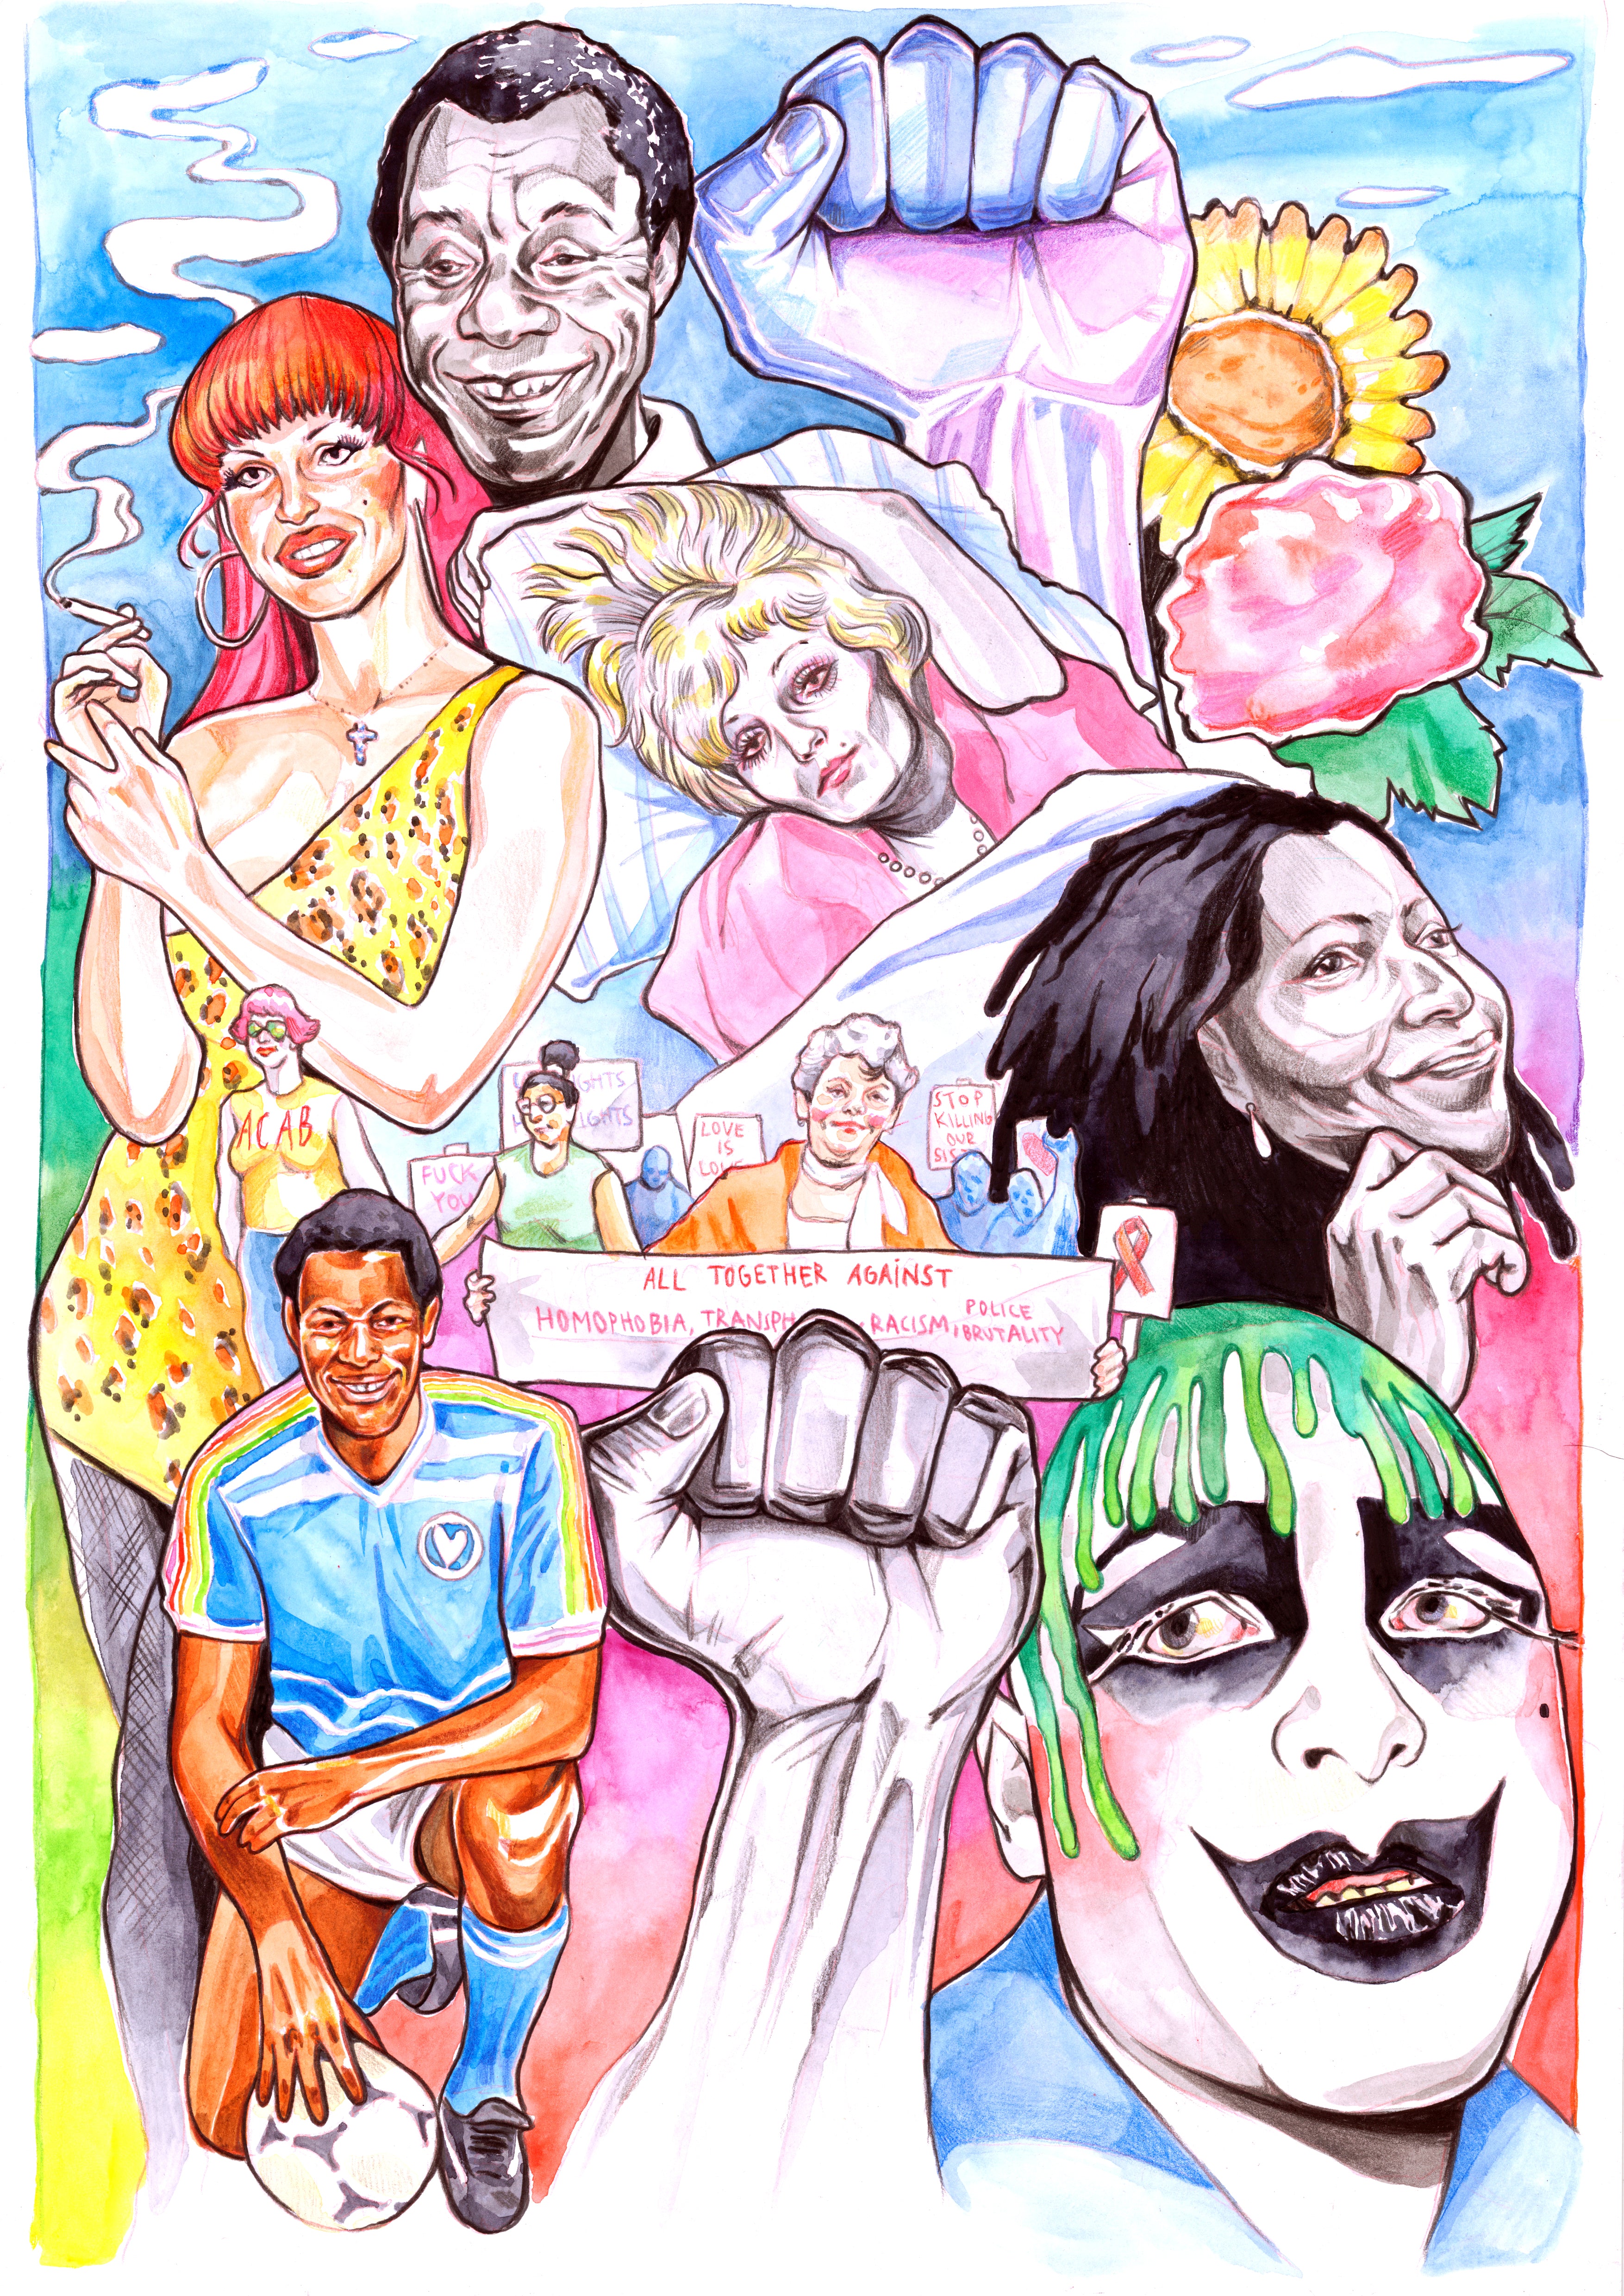 Mural Poster in honor of Pride 2020